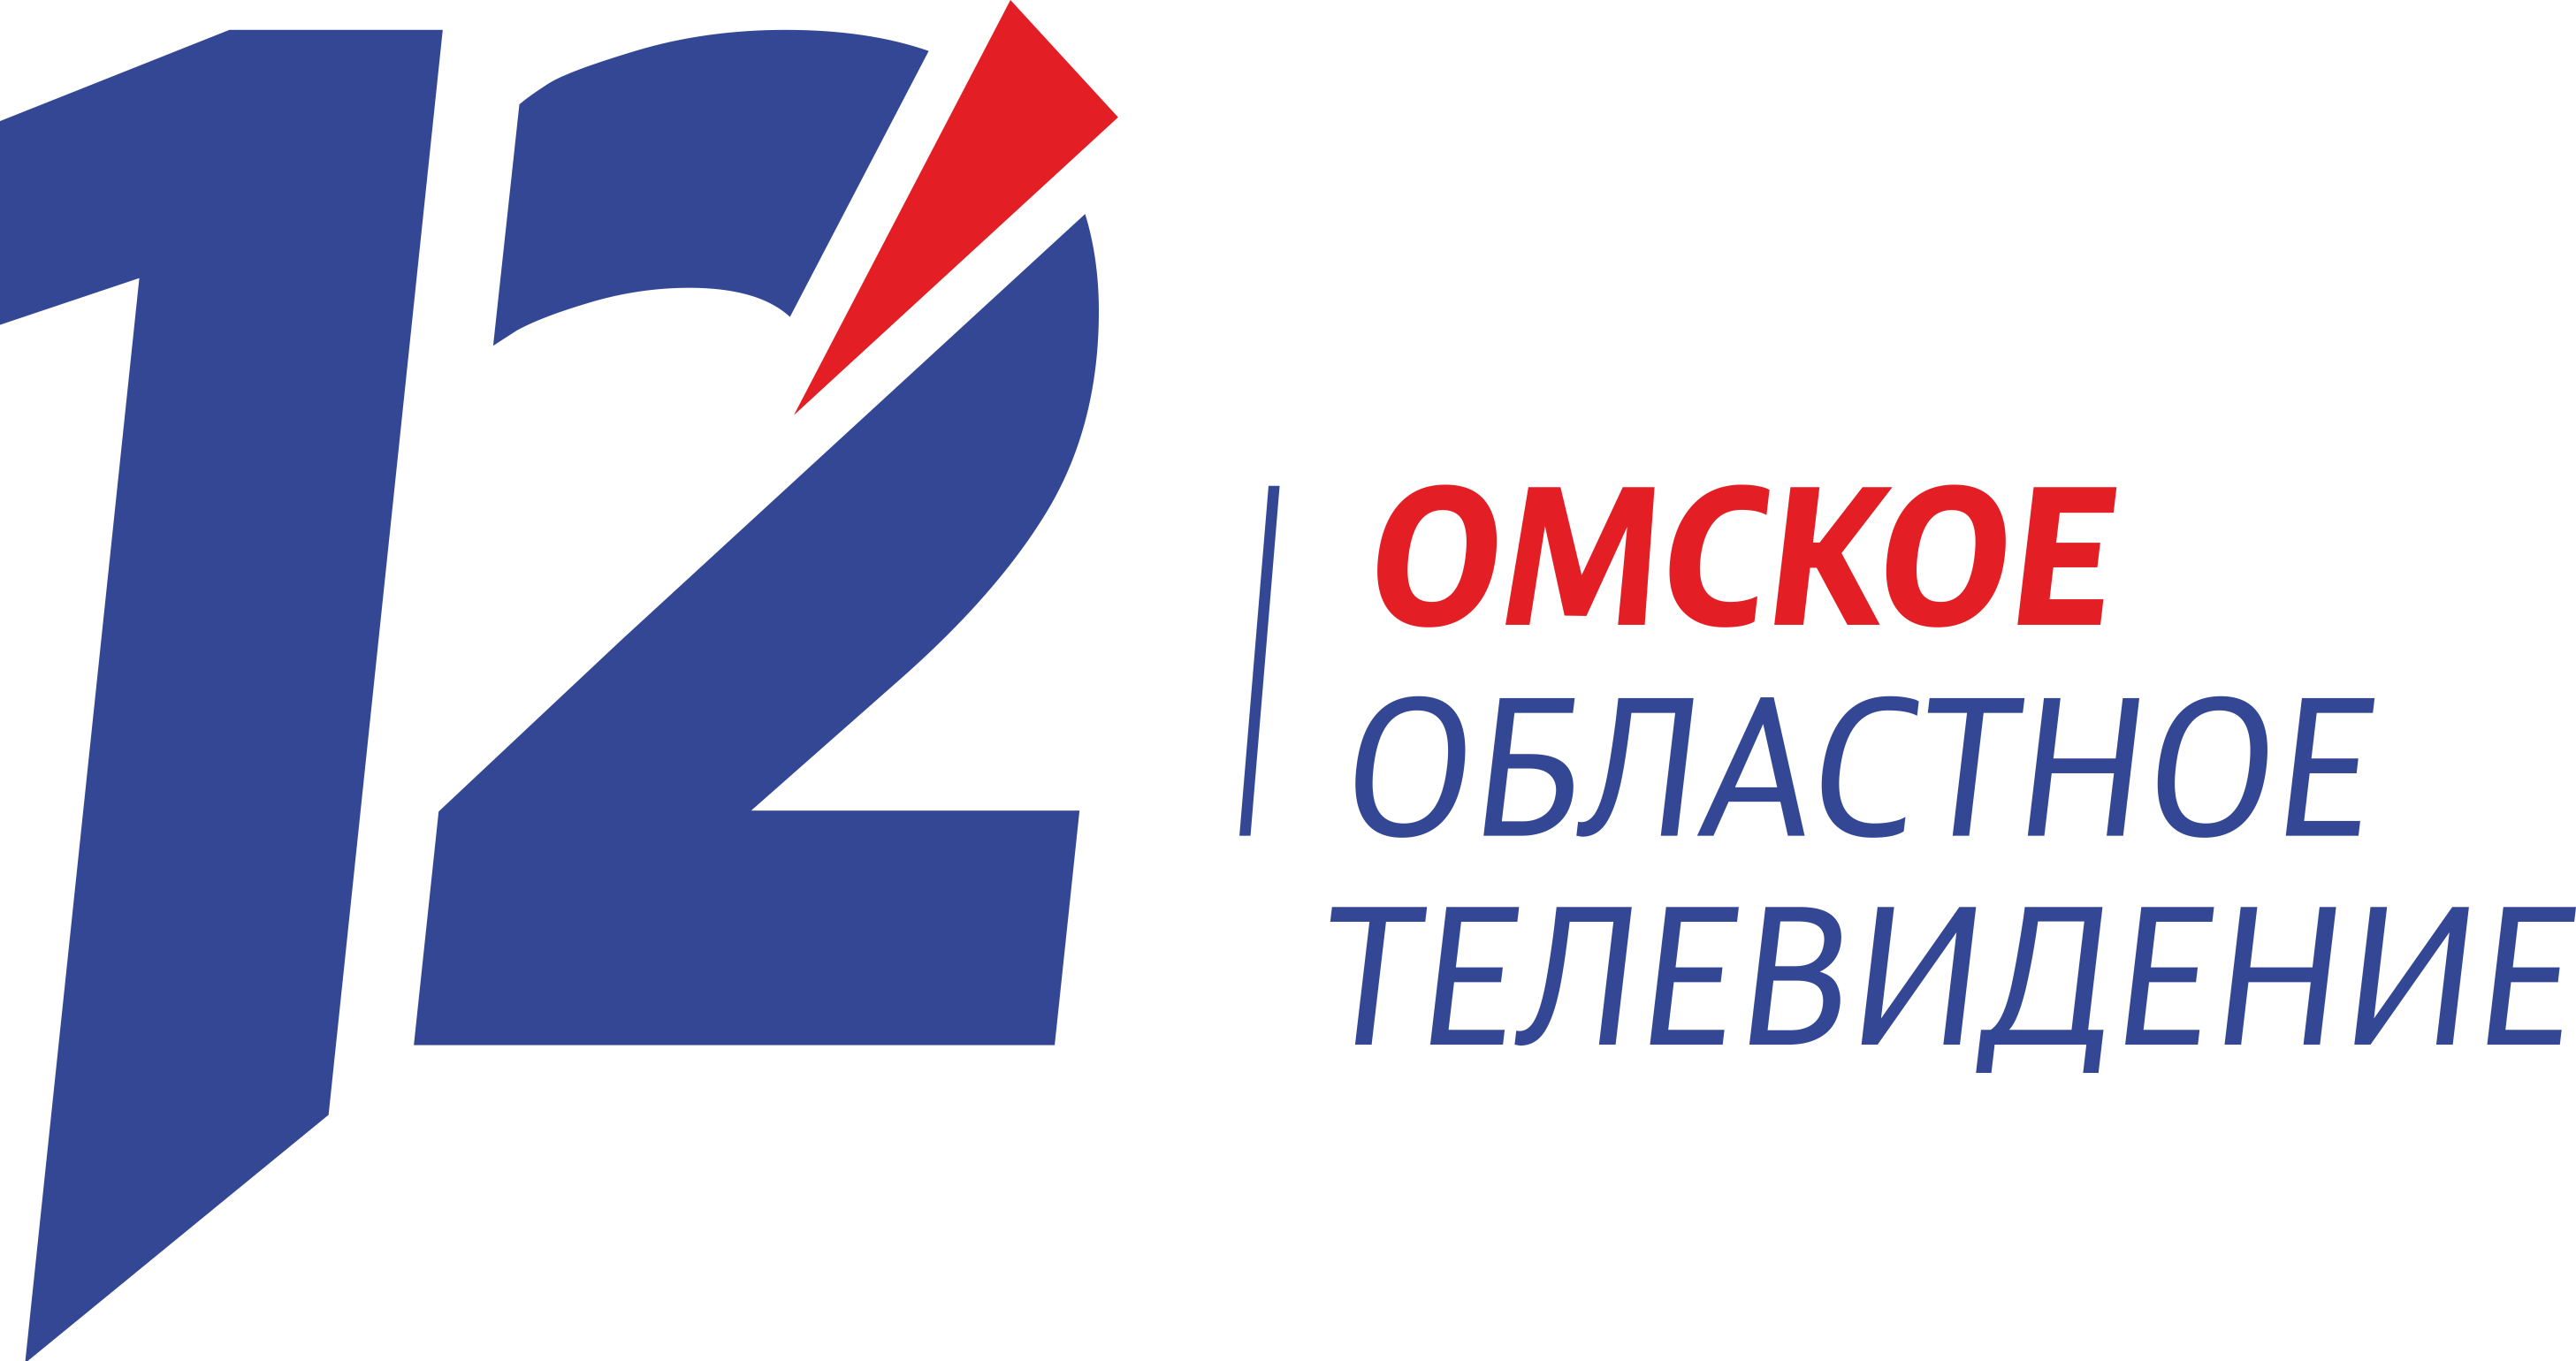 12 канал омск голосование. 12 Канал логотип. Омское областное Телевидение. 12 Канал Омск. 12 Канал Омск логотип.